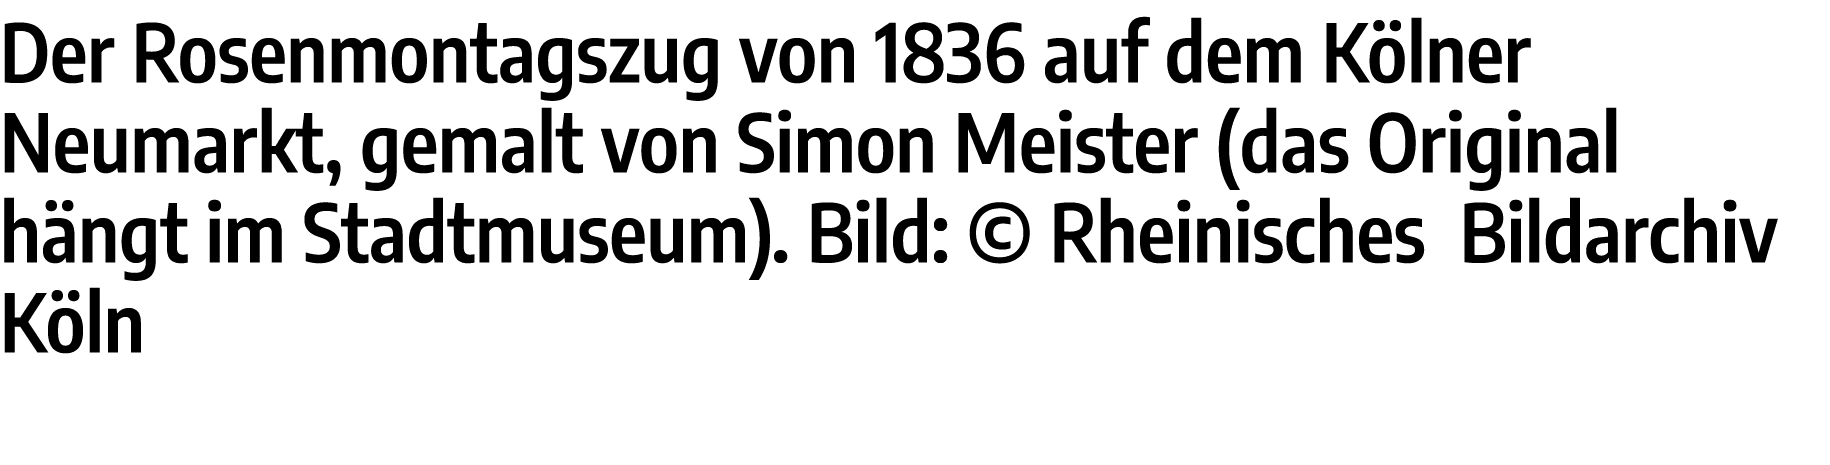 Der Rosenmontagszug von 1836 auf dem Kölner Neumarkt, gemalt von Simon Meister (das Original hängt im Stadtmuseum)  B   